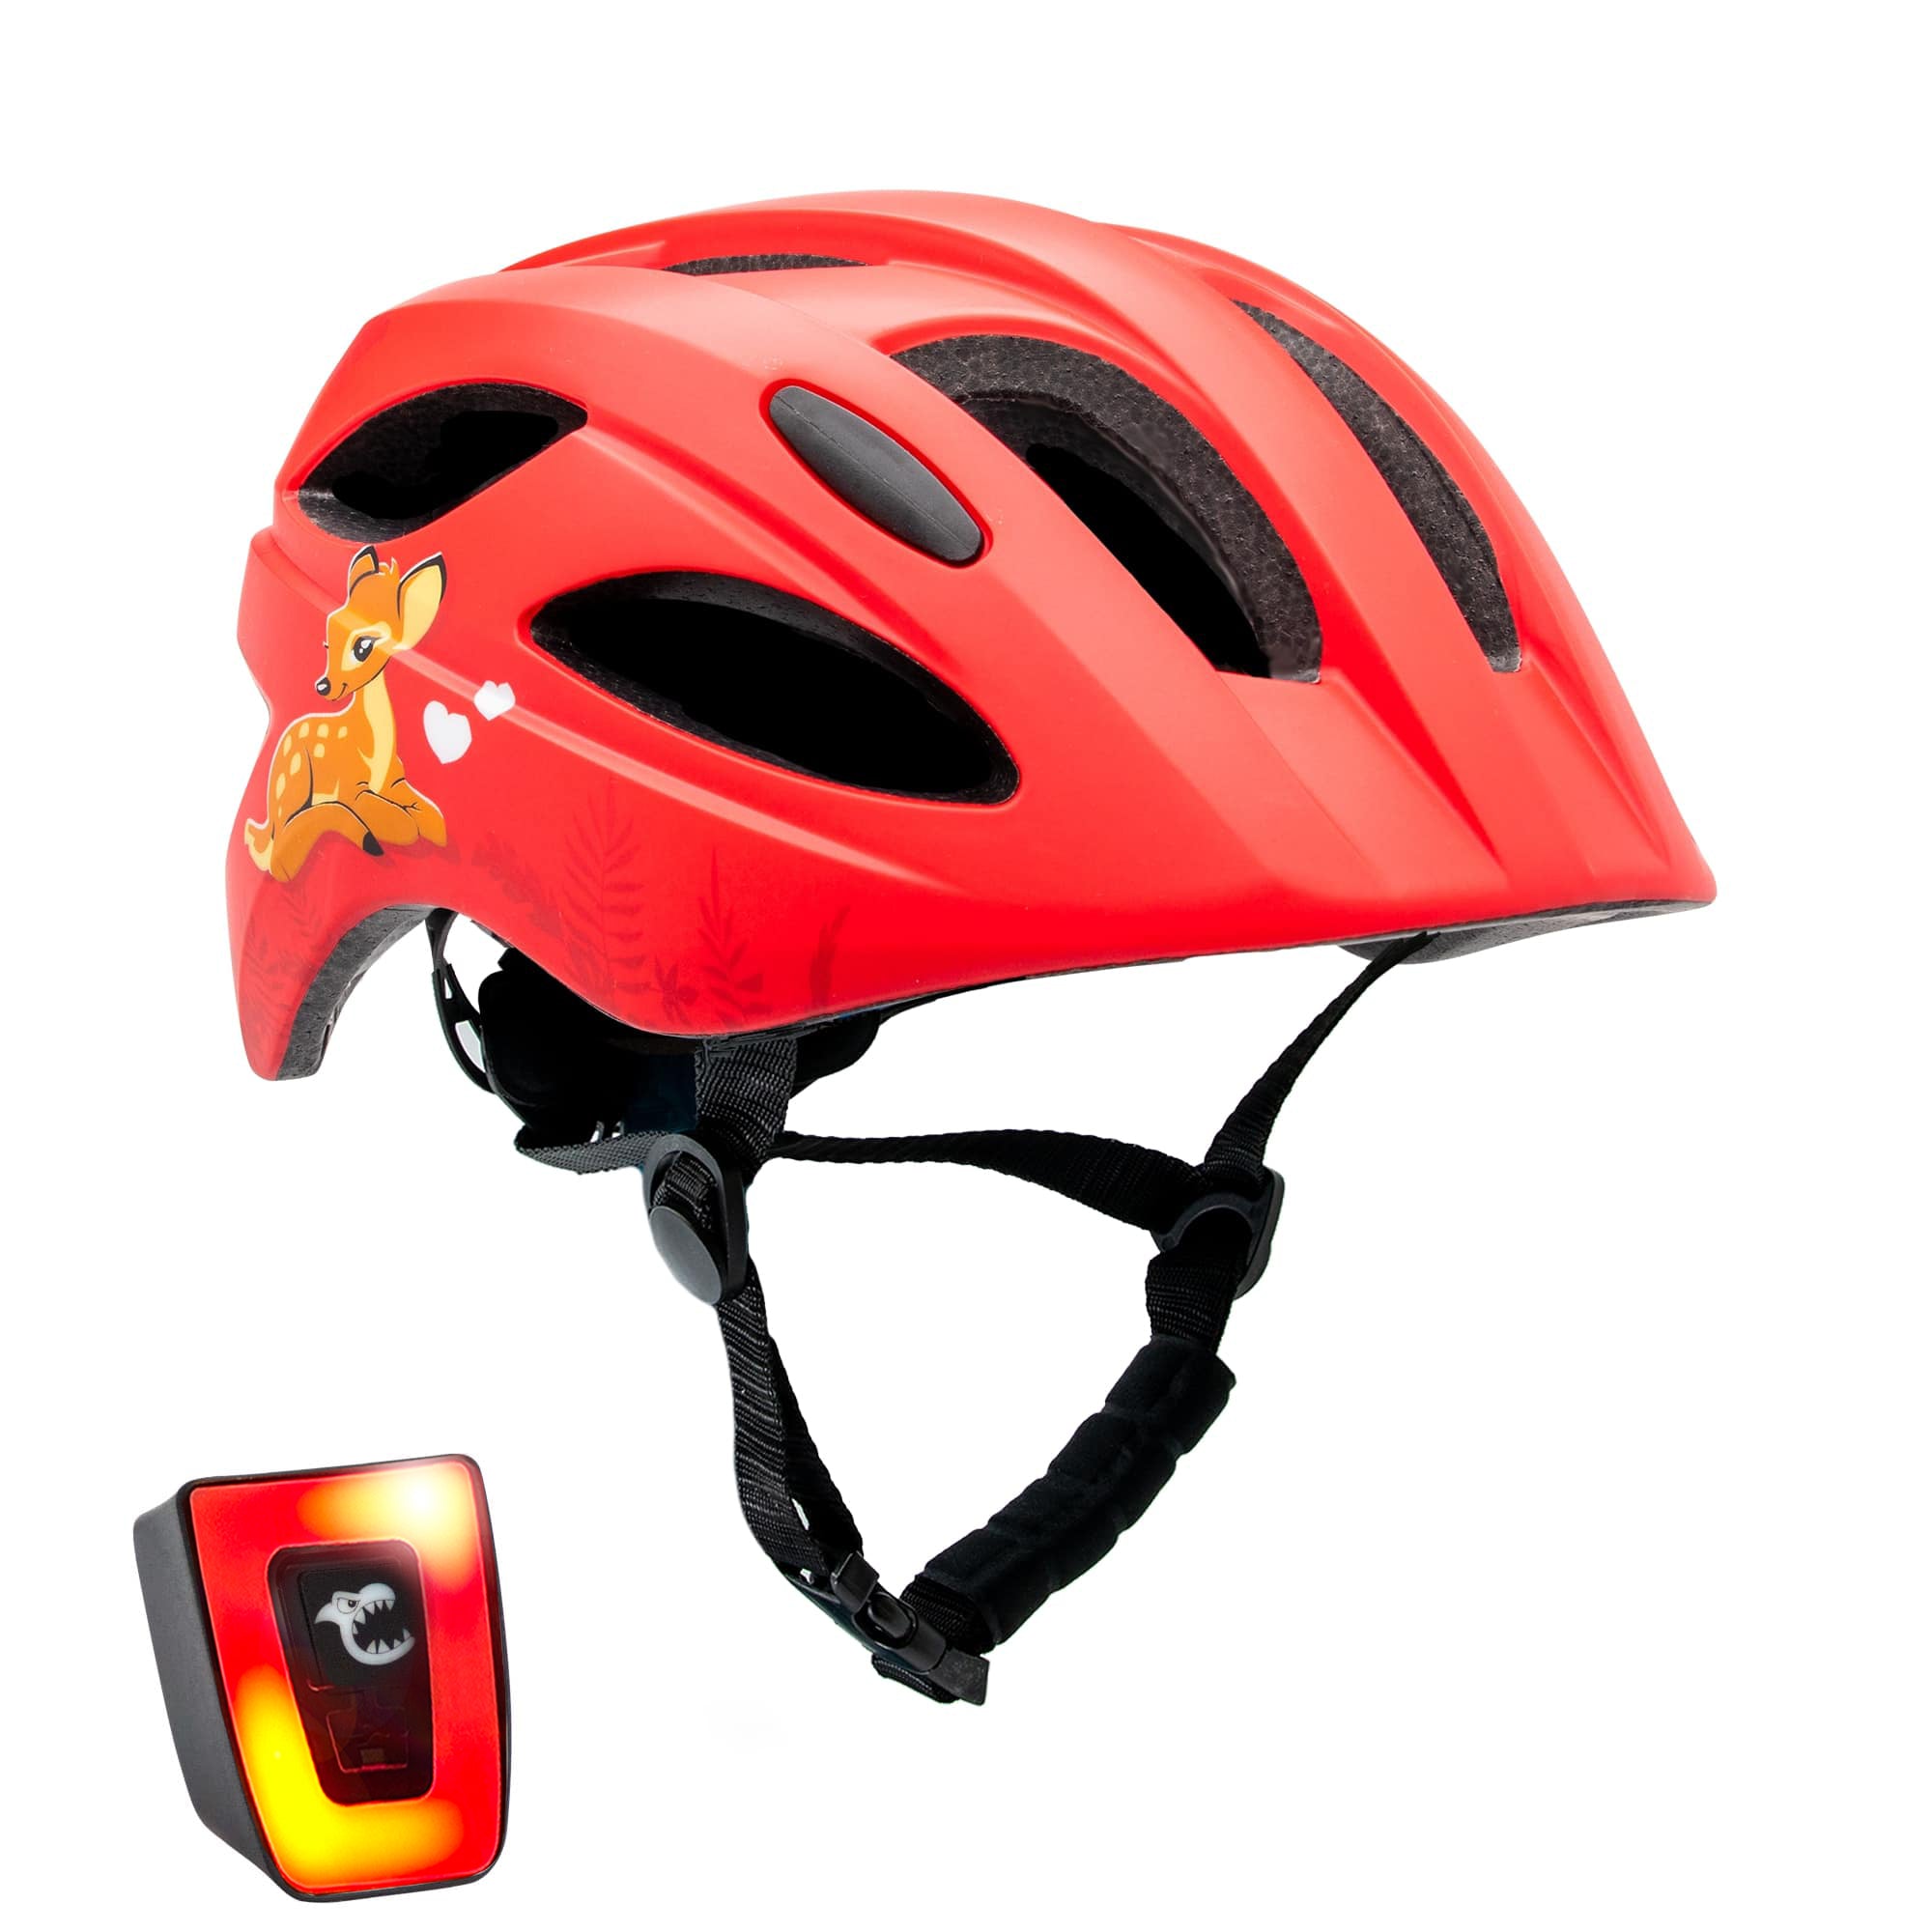 Cute Bicycle Helmet - Red Pack